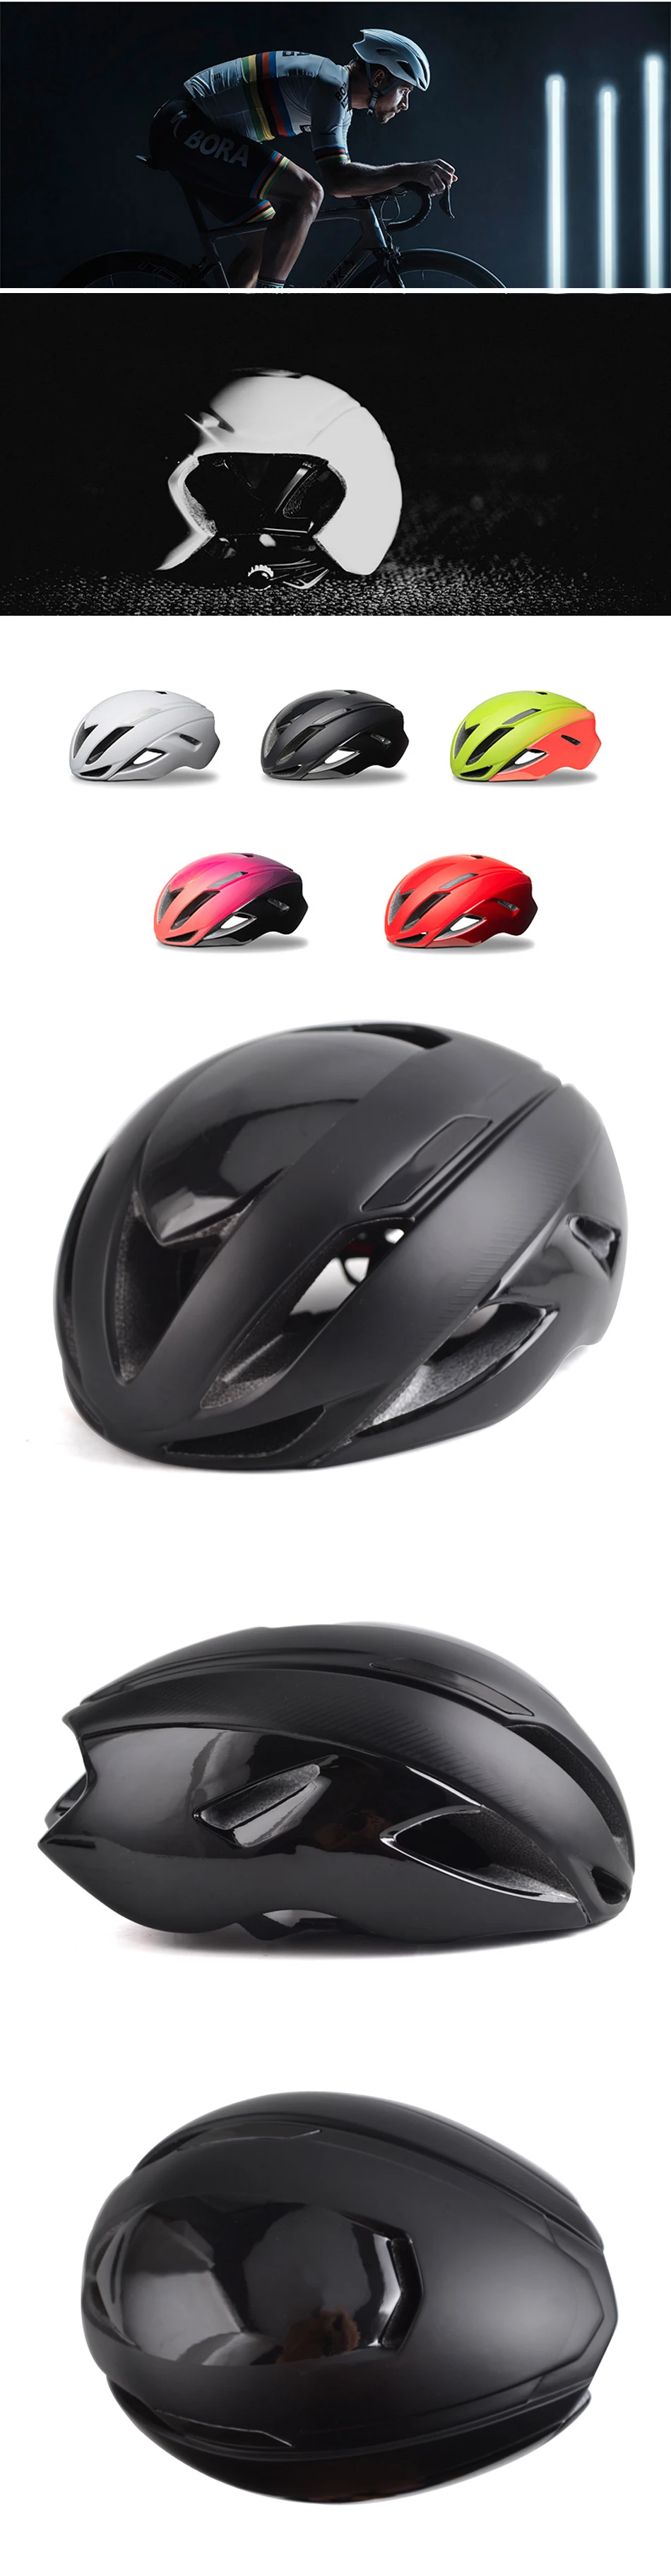 Магнитный замок уклонение II велосипедный шлем TT Trial XC велосипед для триатлона шлем 55-59 см взрослый легкий шлем MTB безопасность Велосипедное оборудование